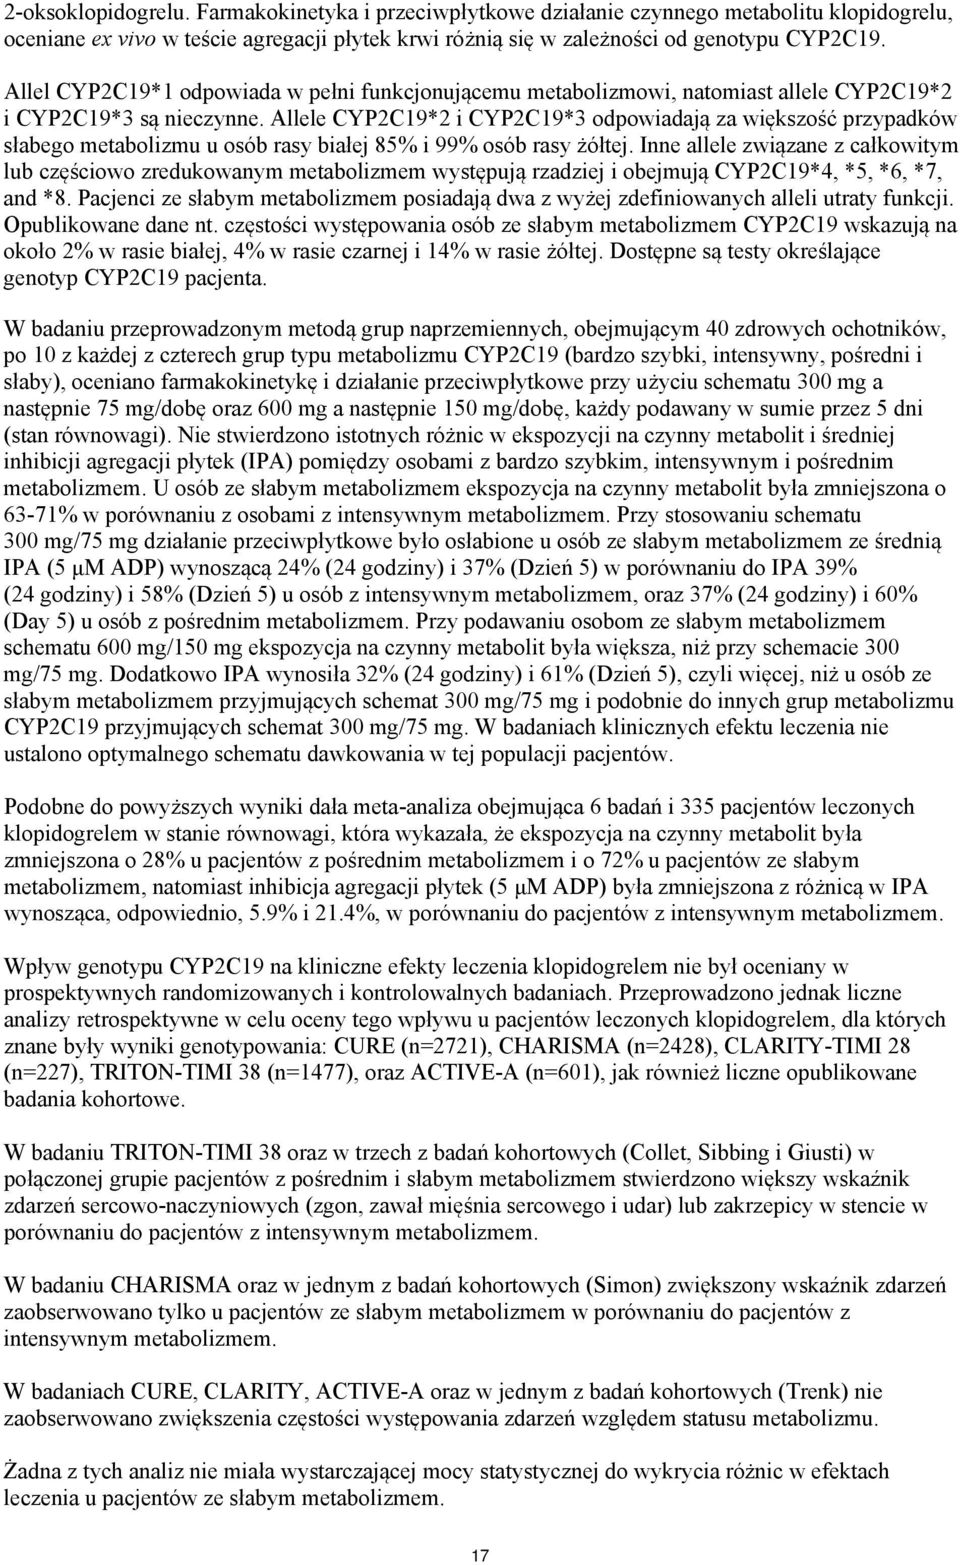 Allele CYP2C19*2 i CYP2C19*3 odpowiadają za większość przypadków słabego metabolizmu u osób rasy białej 85% i 99% osób rasy żółtej.